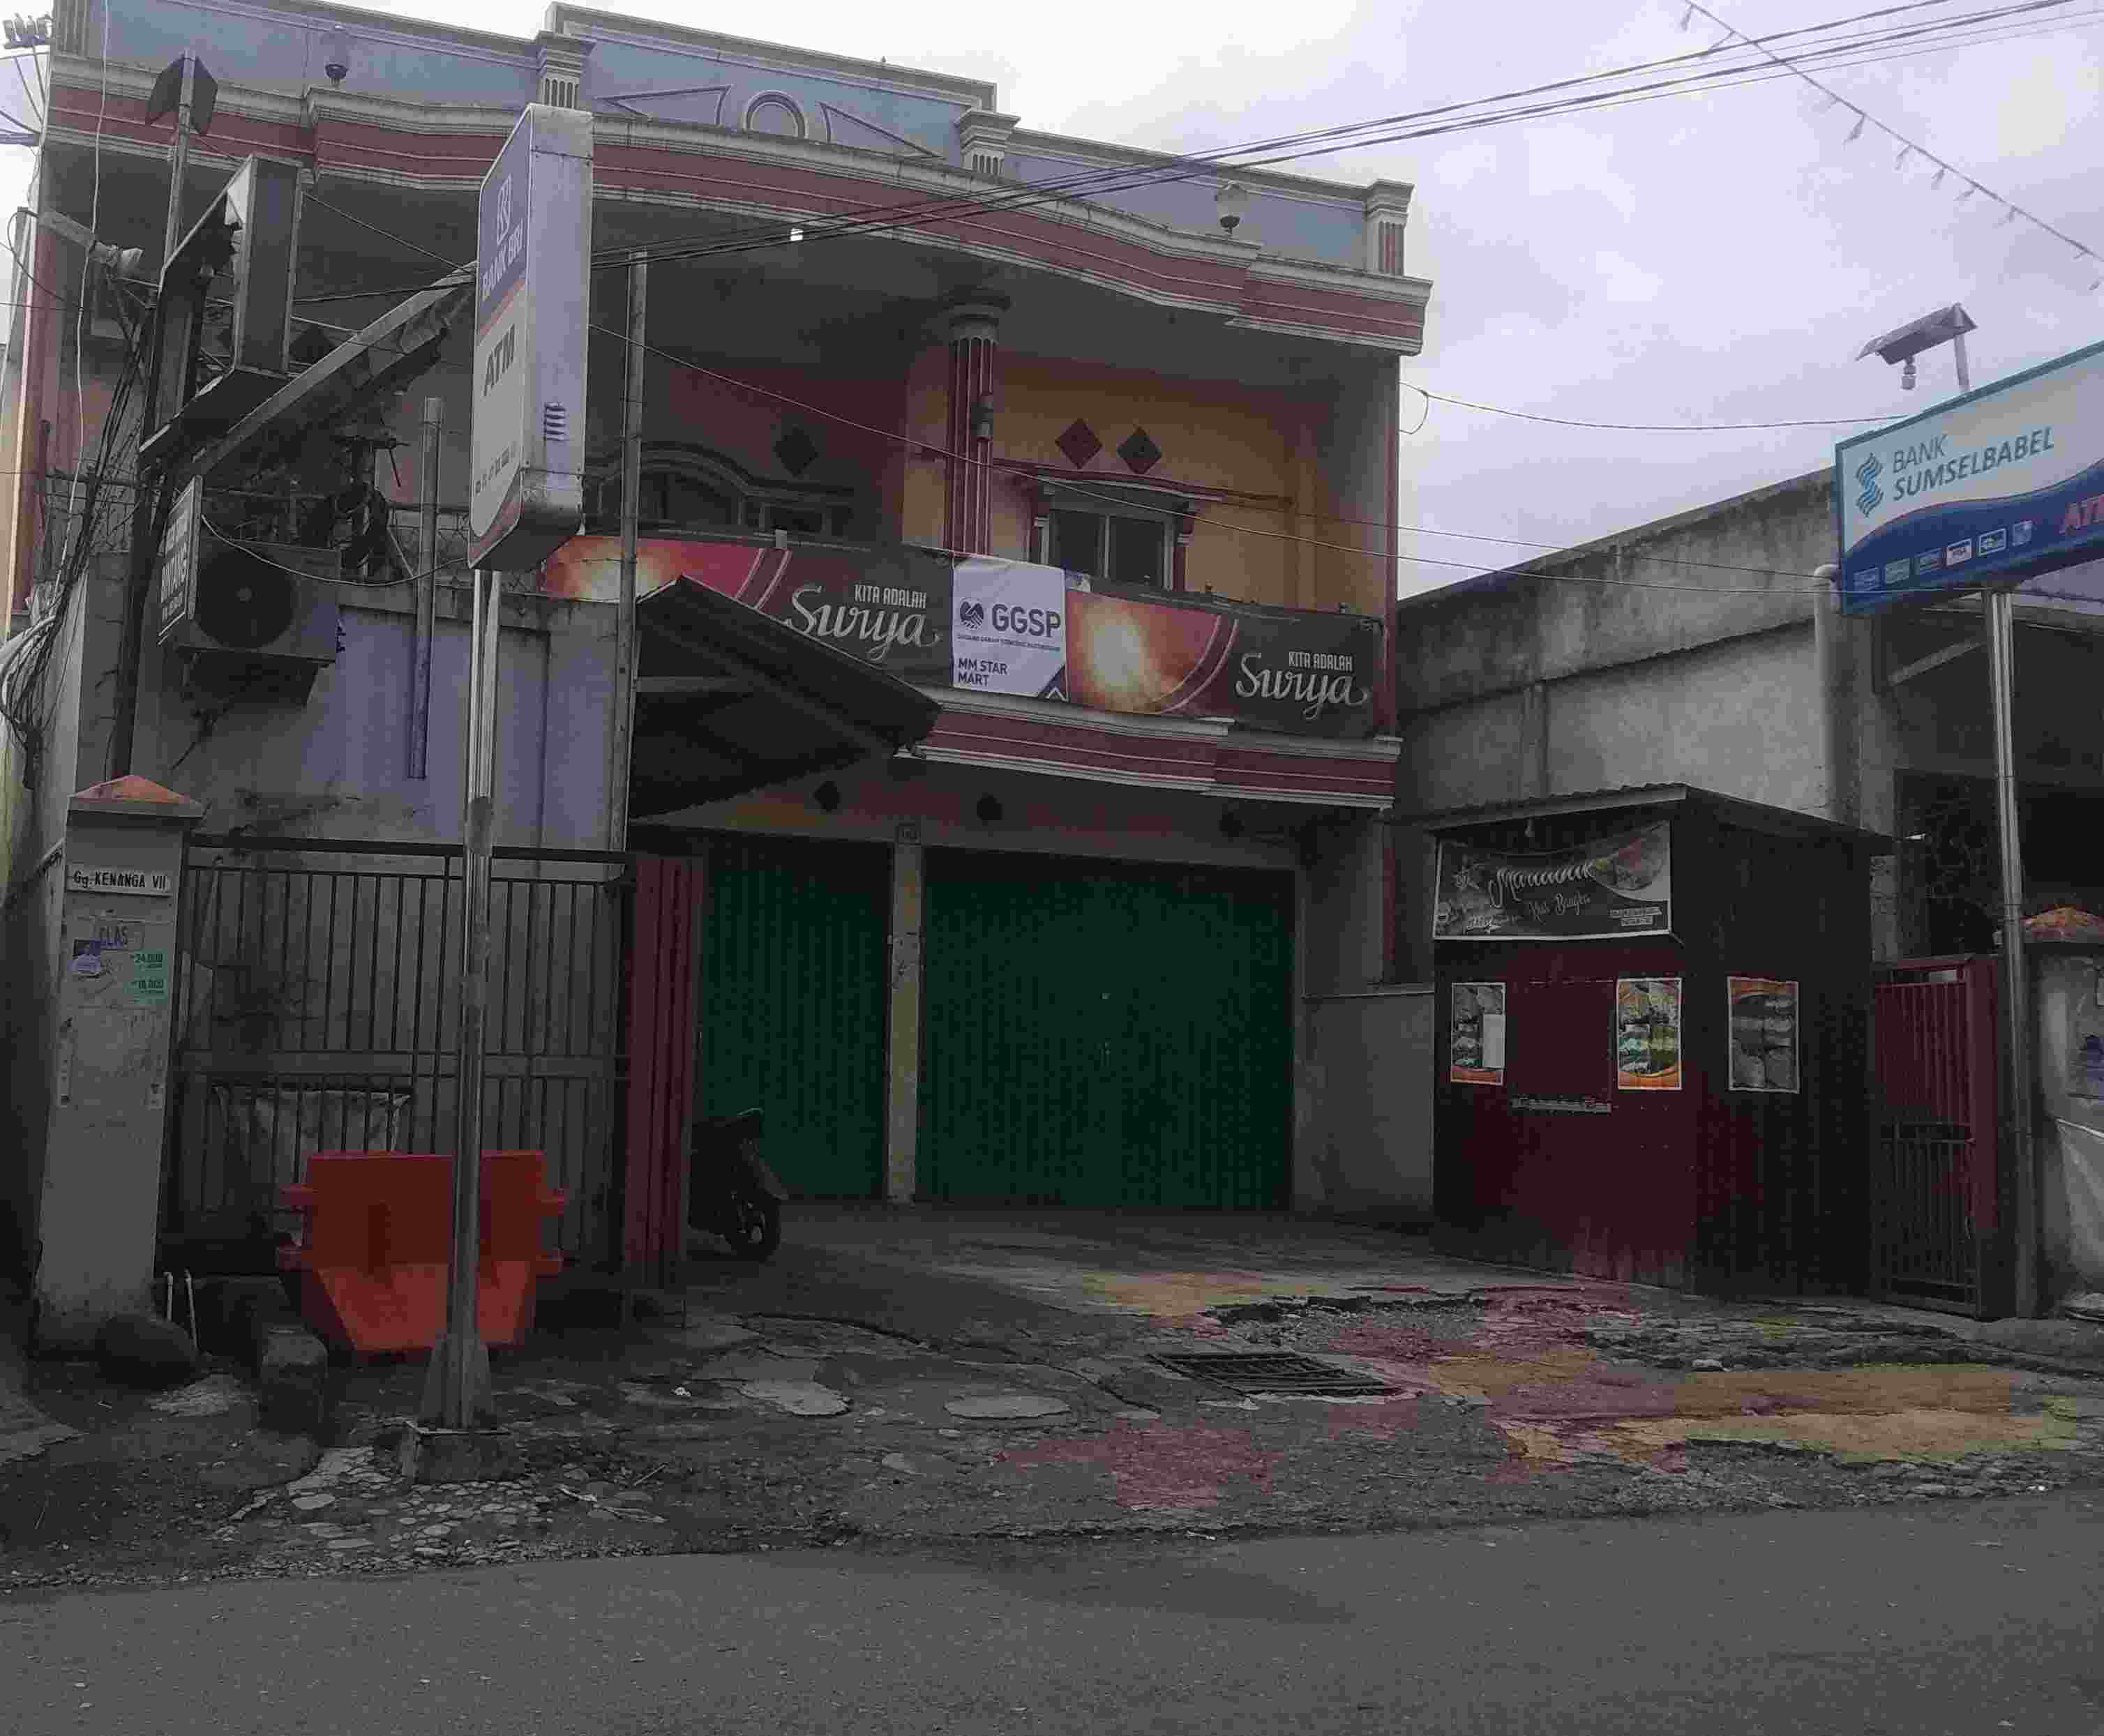 Banyak Toko Tutup, Pemilik Rayakan Imlek di Luar Kota Pagaralam